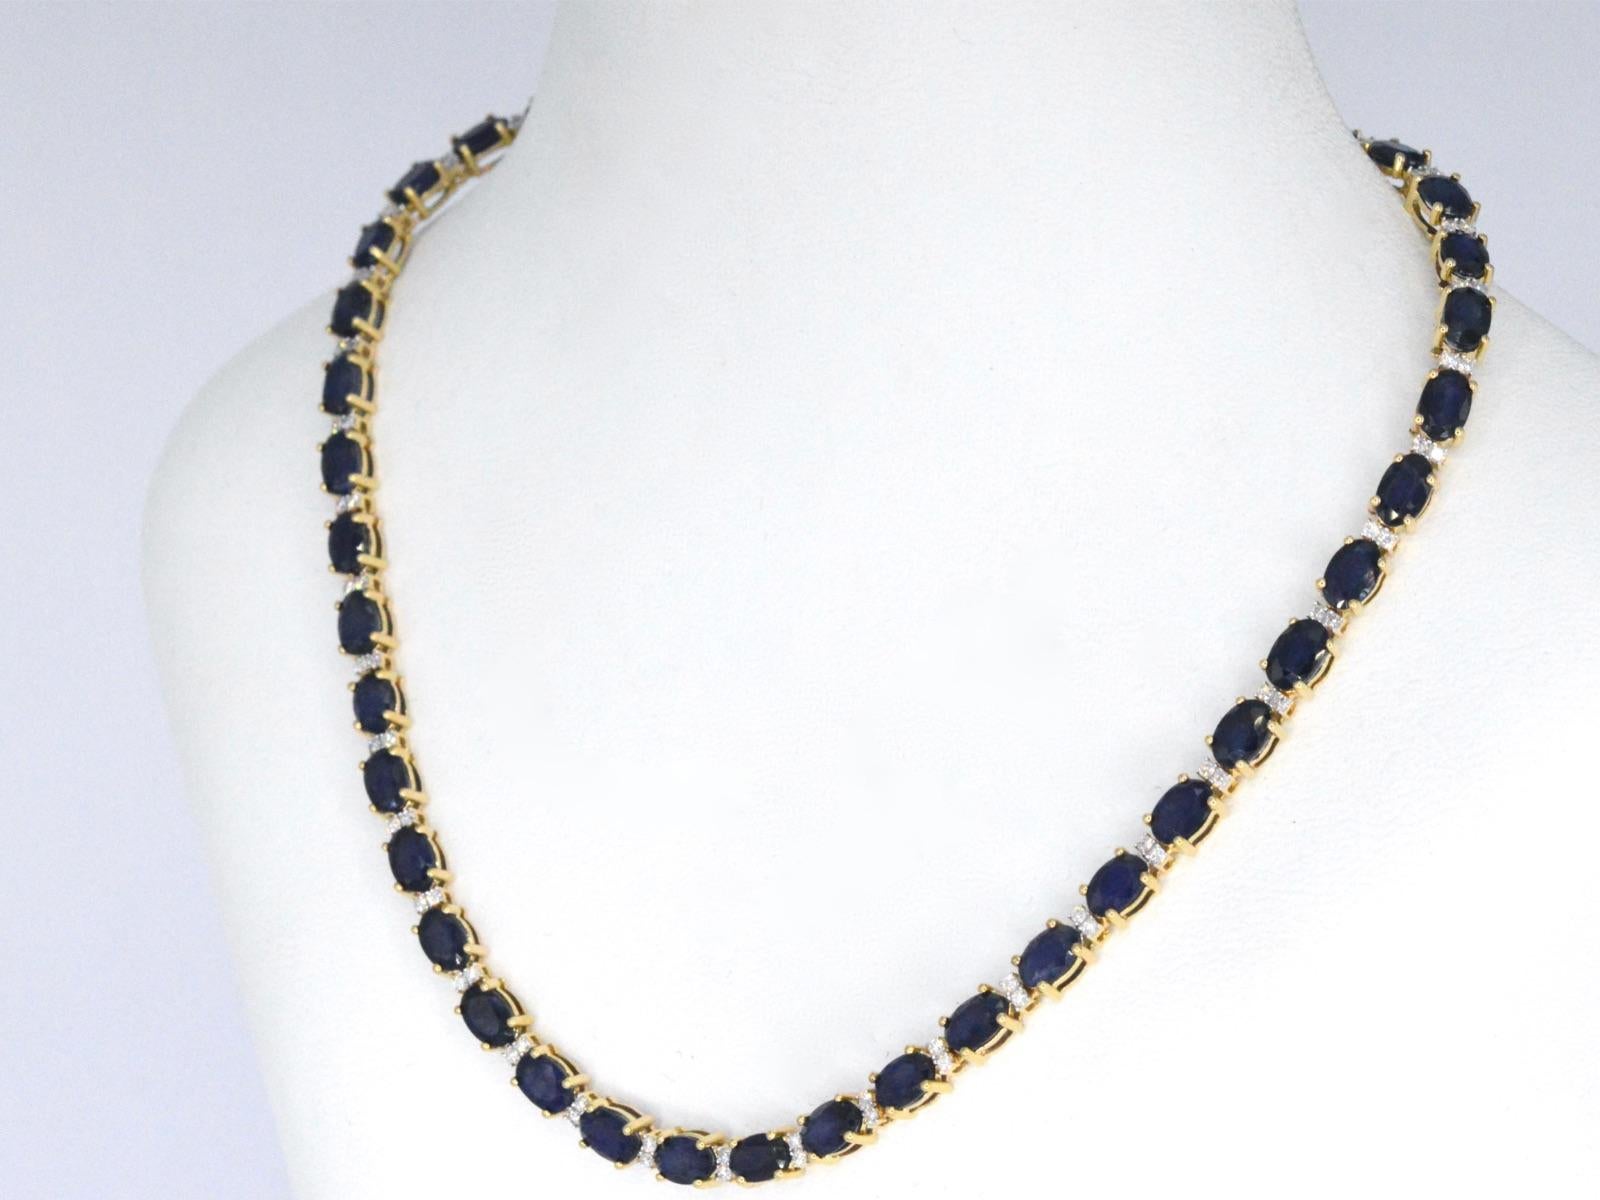 sapphire and diamond necklace costco